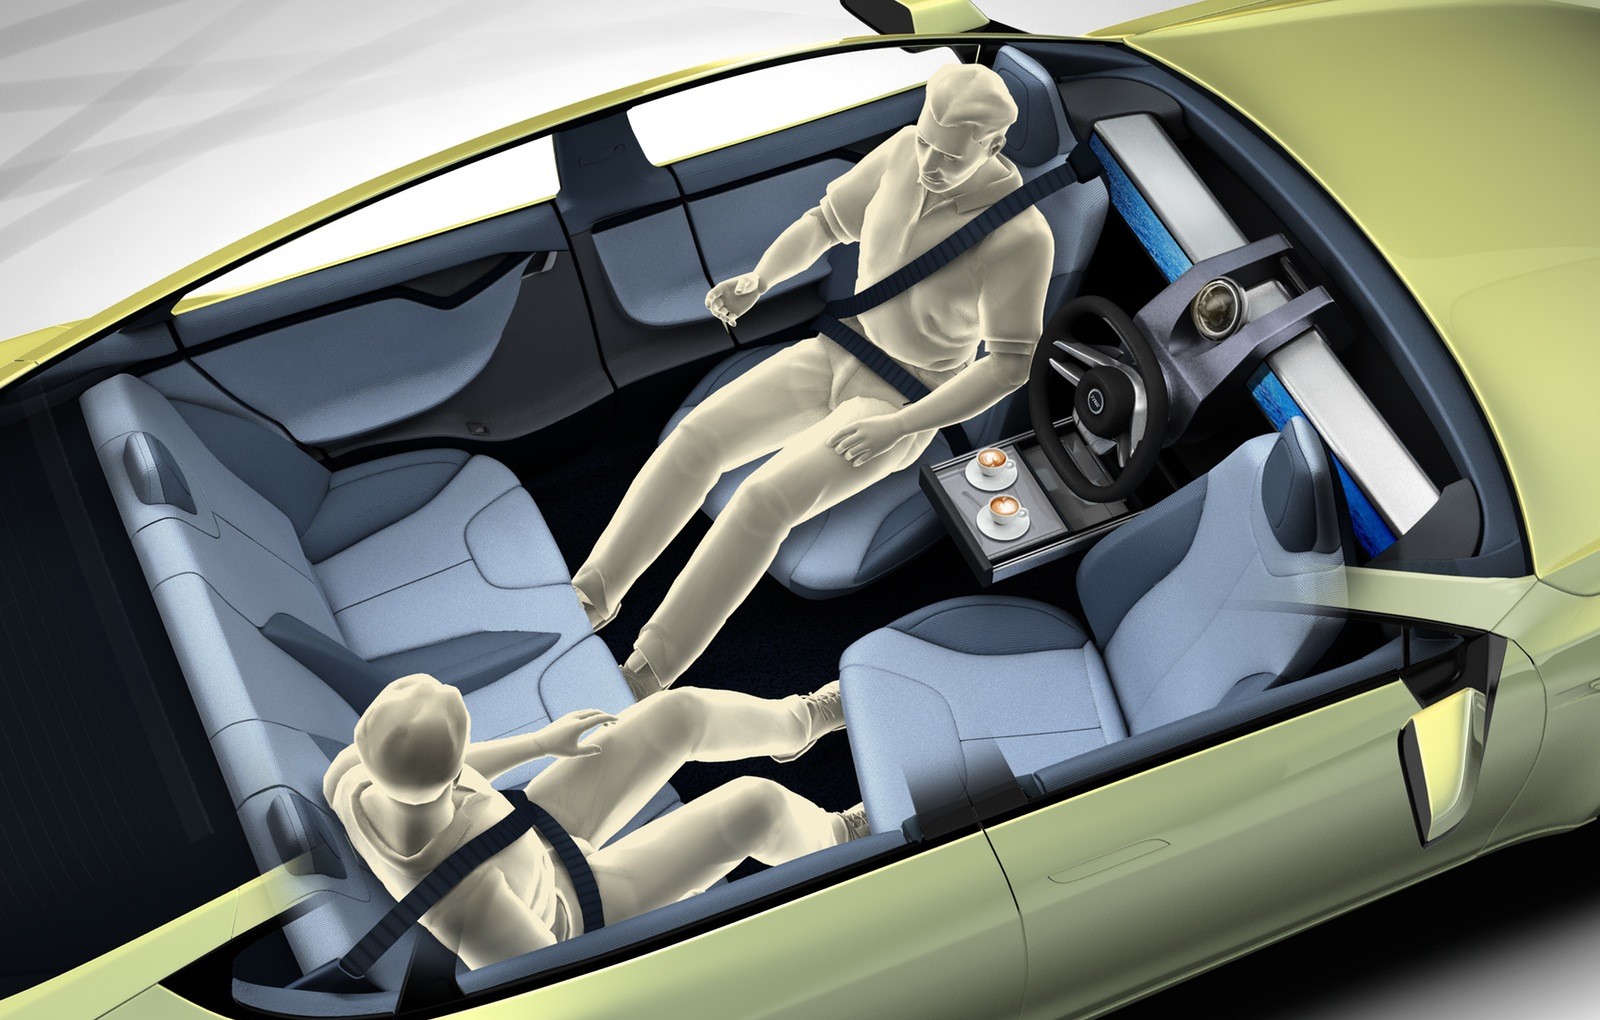 Rinspeed XchangE concept previews autonomous vehicle cabin design